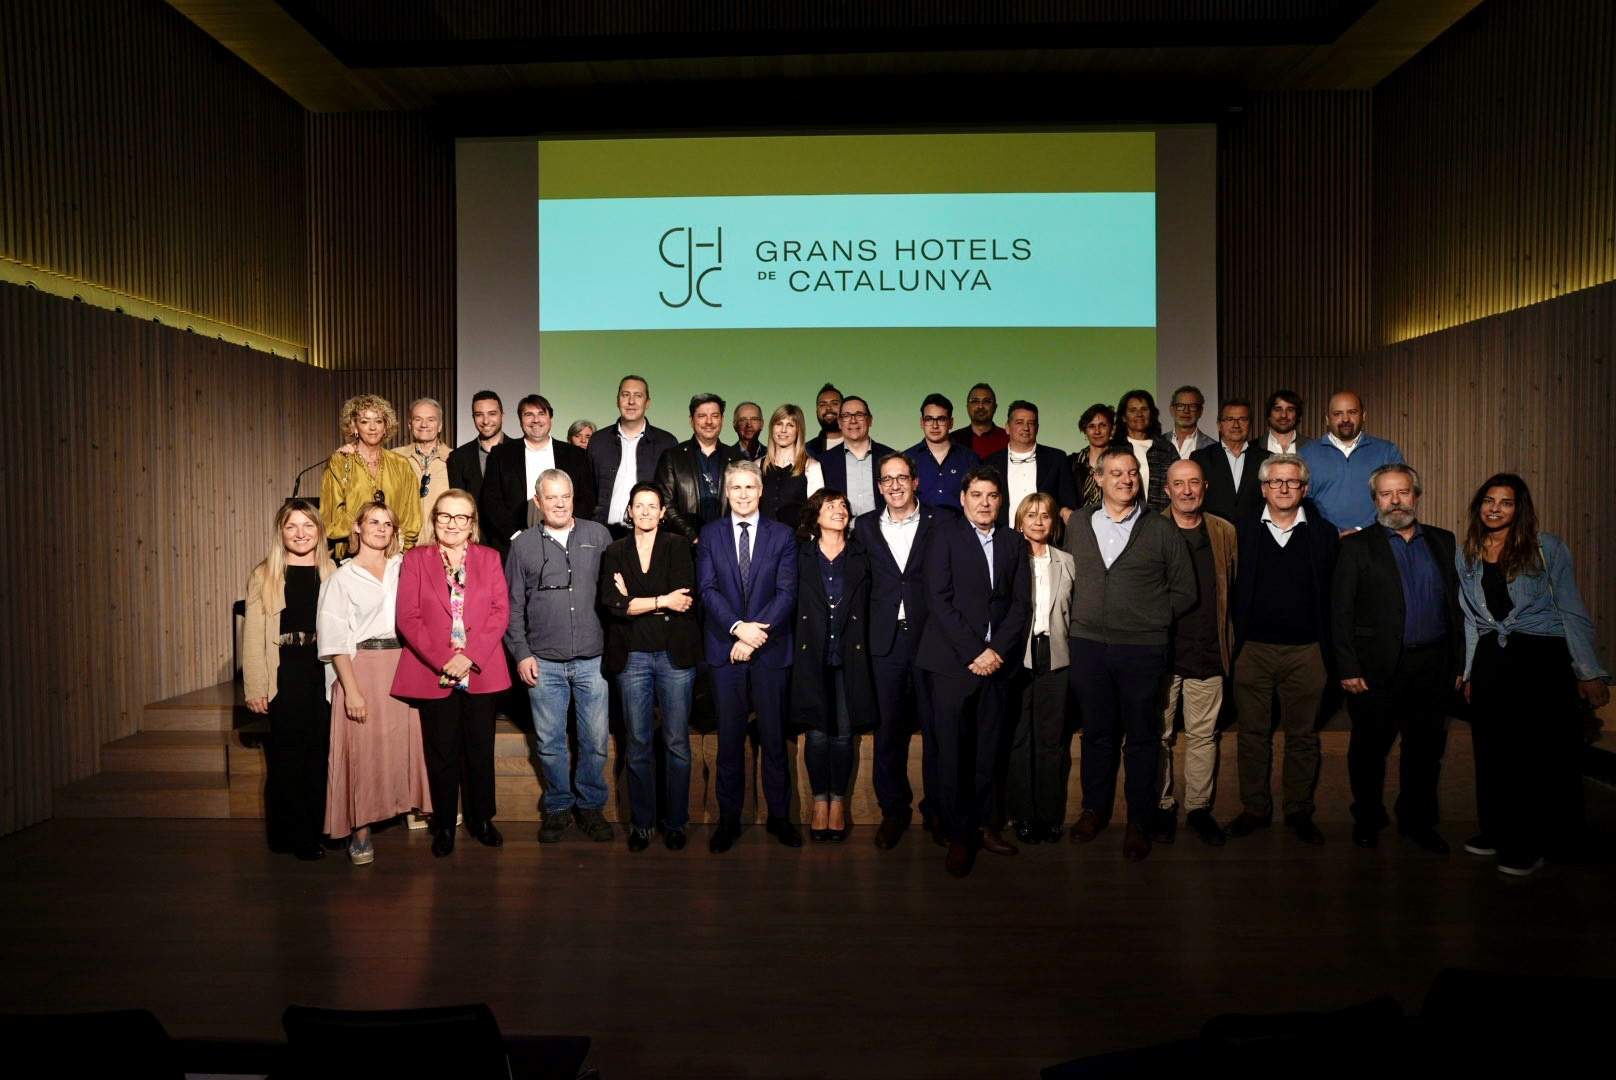 Una trentena d'hotels catalans s'uneixen sota la marca Grans Hotels de Catalunya